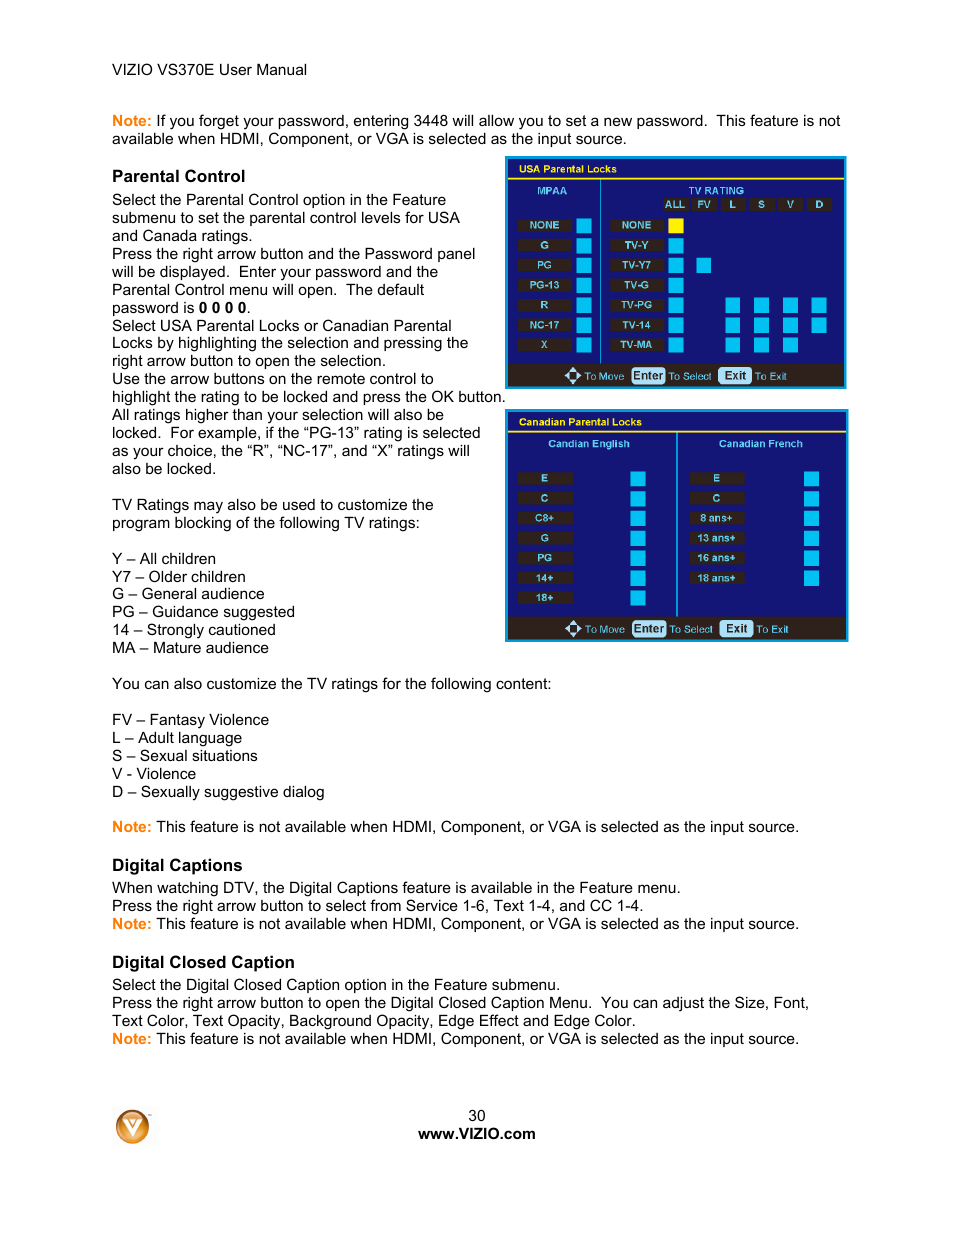 Vizio VS370E User Manual | Page 30 / 43